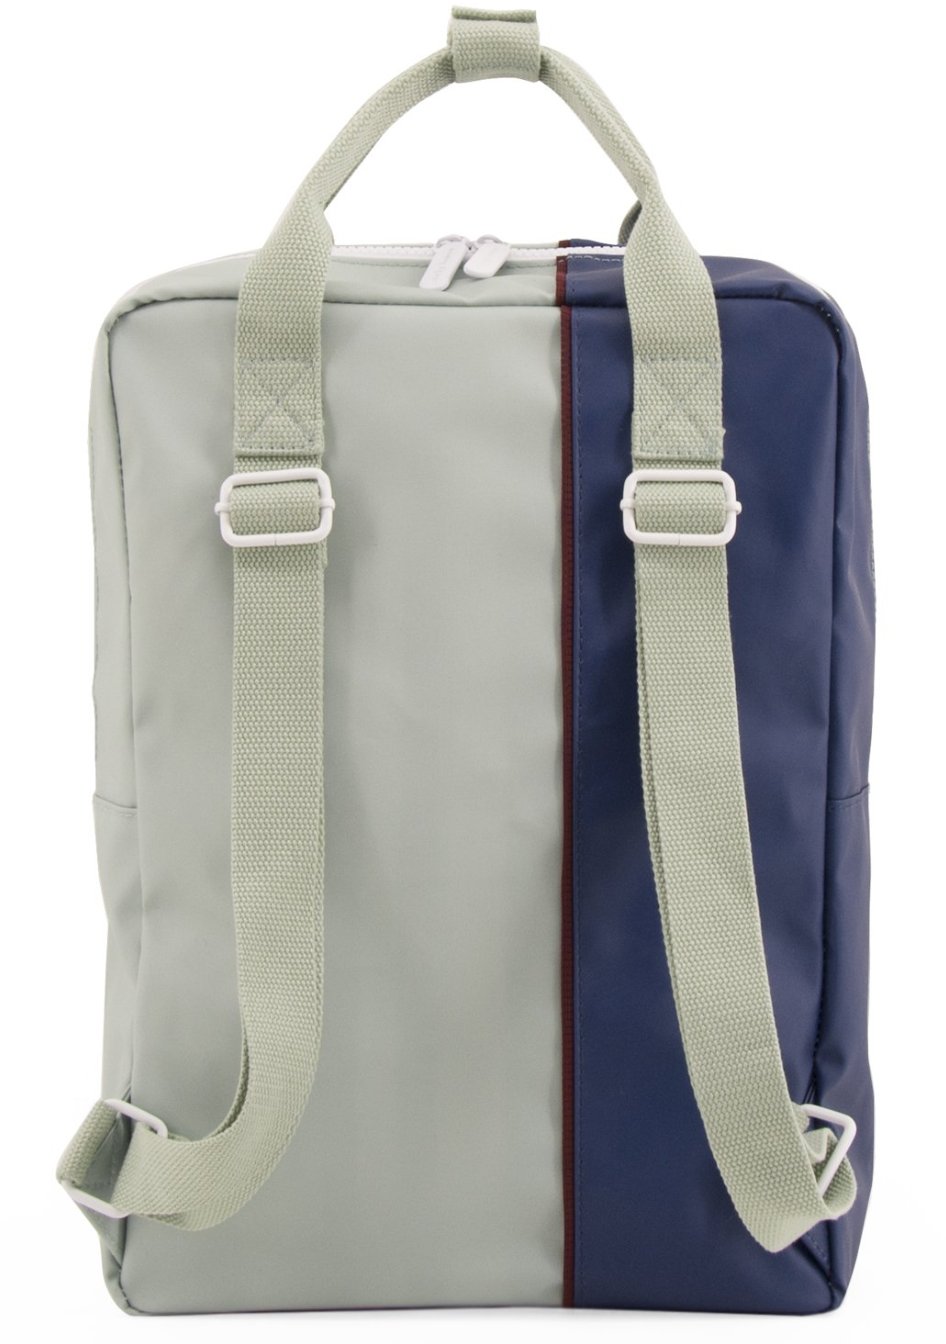 Large backpack vertical - sage green / dark blue